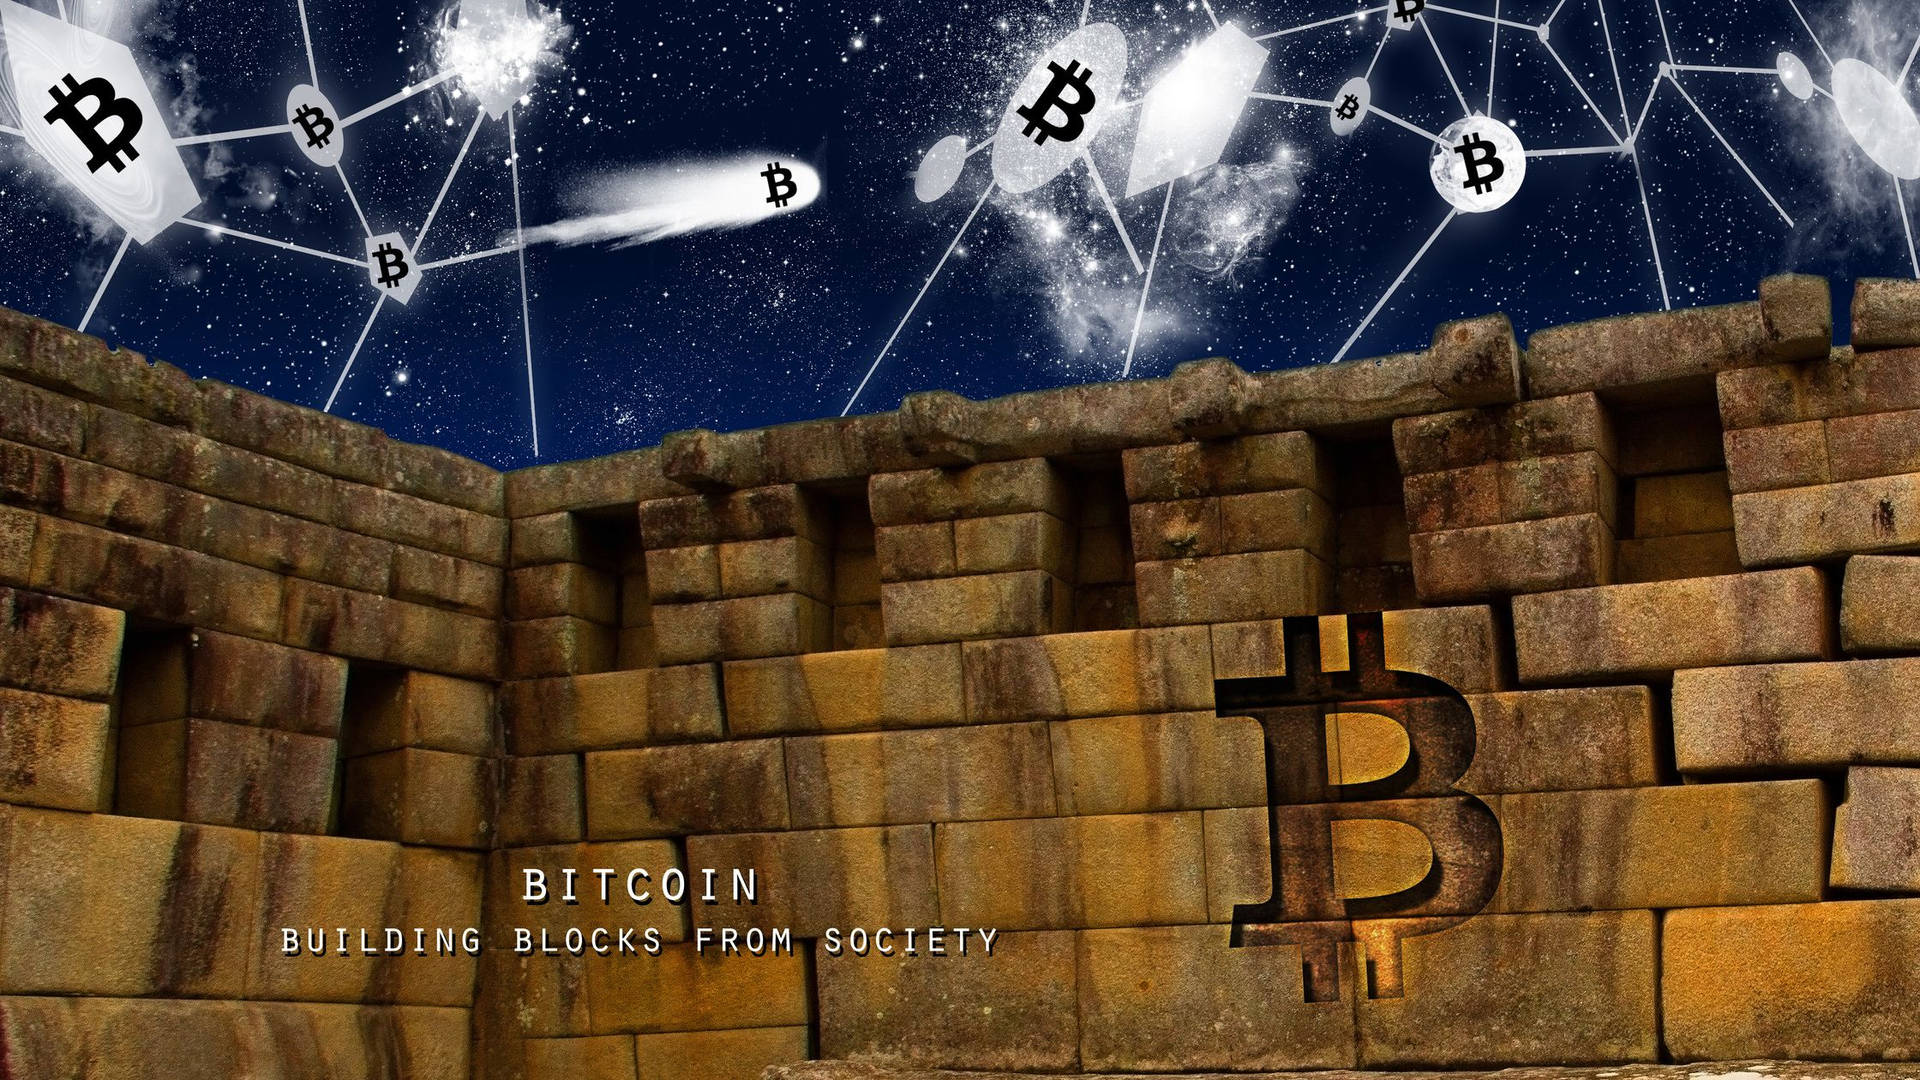 Building Blocks From Society Bitcoin